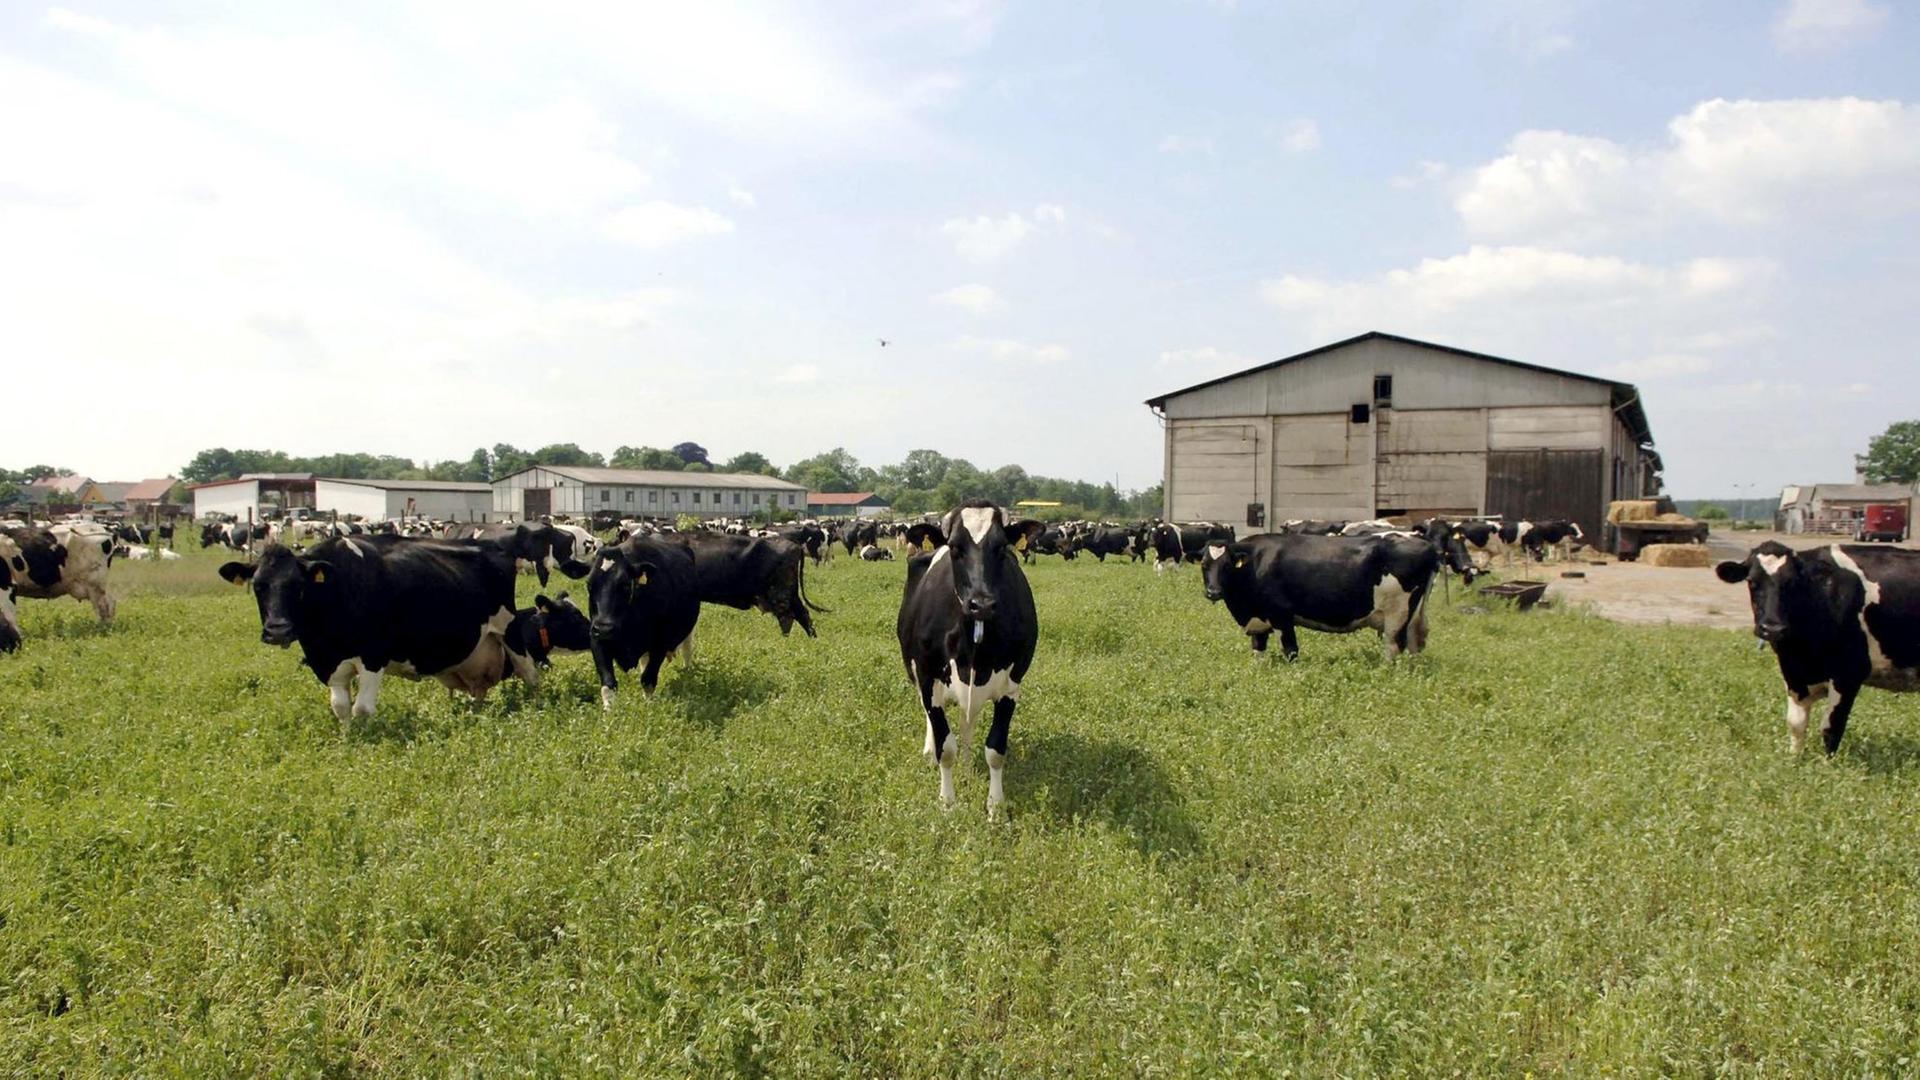 Eine Herde von Milchkühen steht auf einer Weide des Milchviehbetriebes im brandenburgischen Münchehofe (Dahme-Spreewald). Der Betrieb gehört zur Agrargenossenschaft Münchehofe.